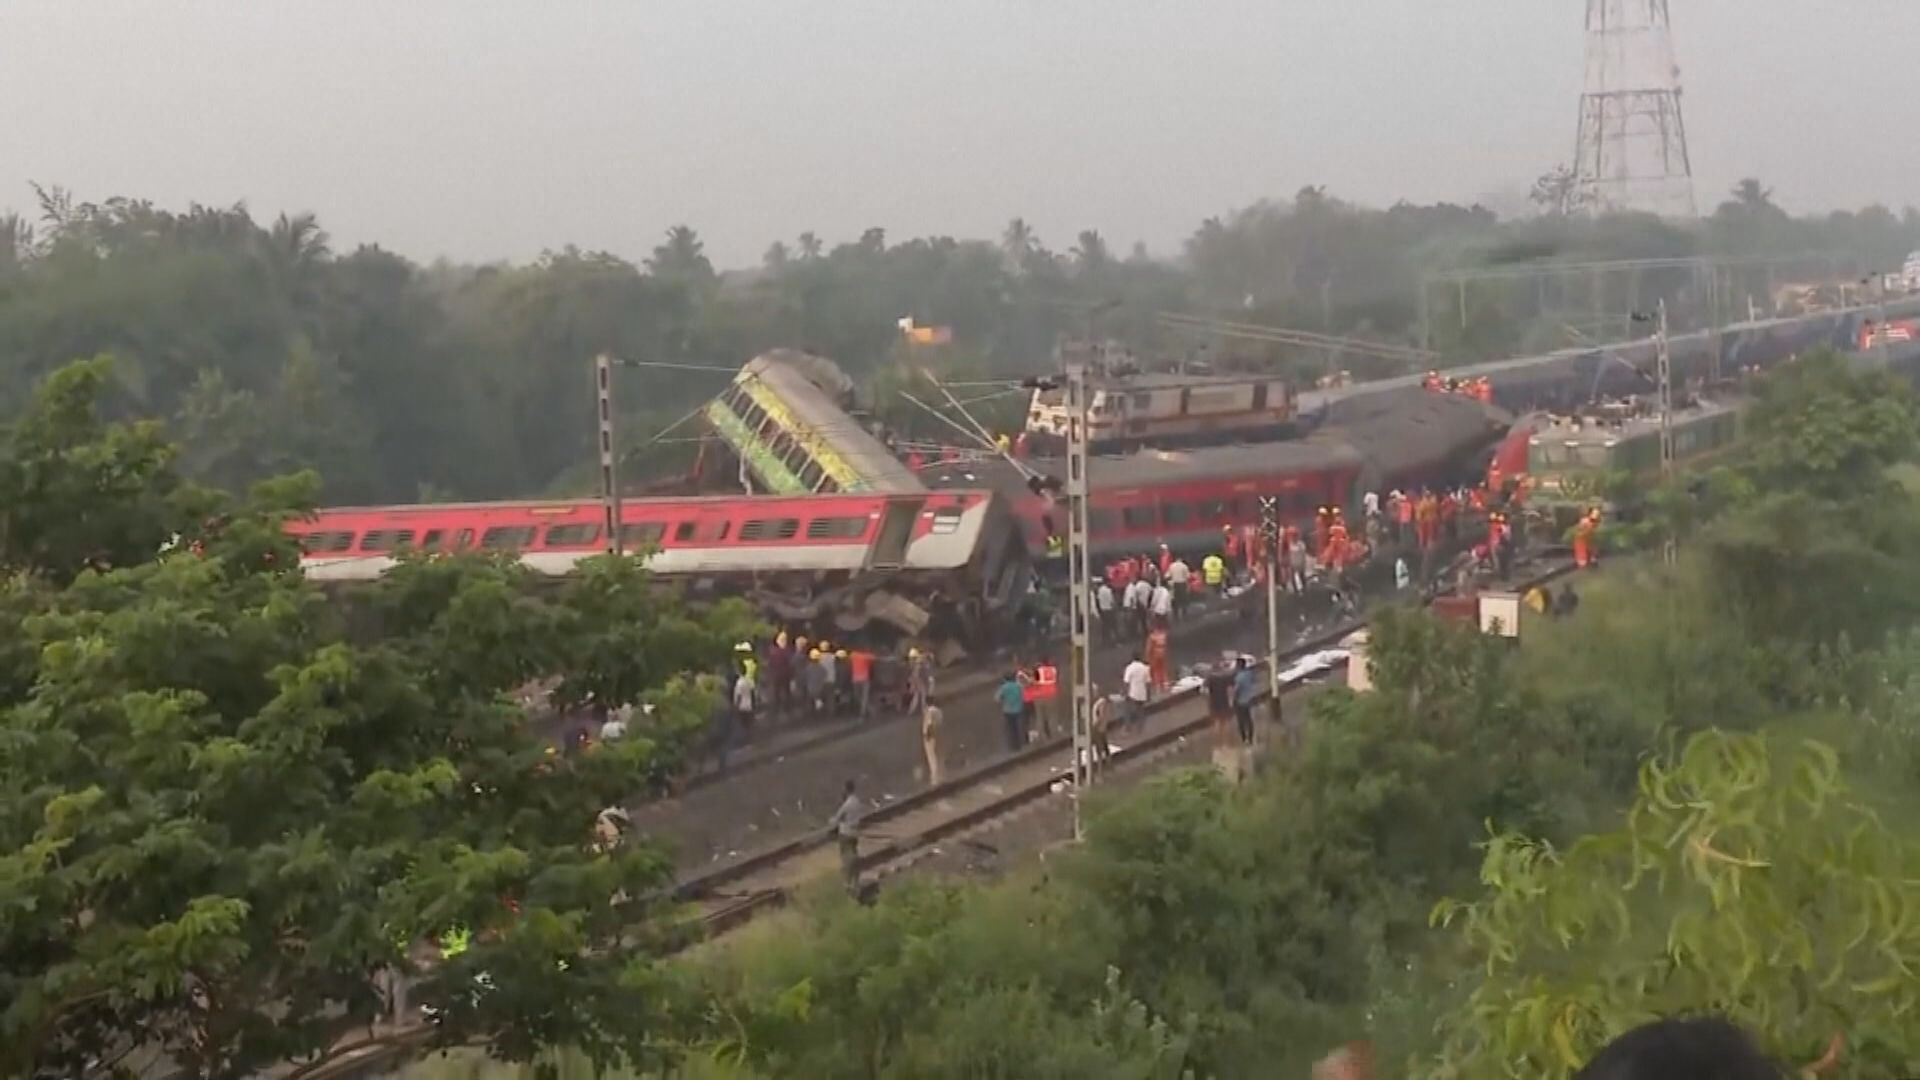 印度總理莫迪到列車相撞現場視察 指已下令全方位調查事件